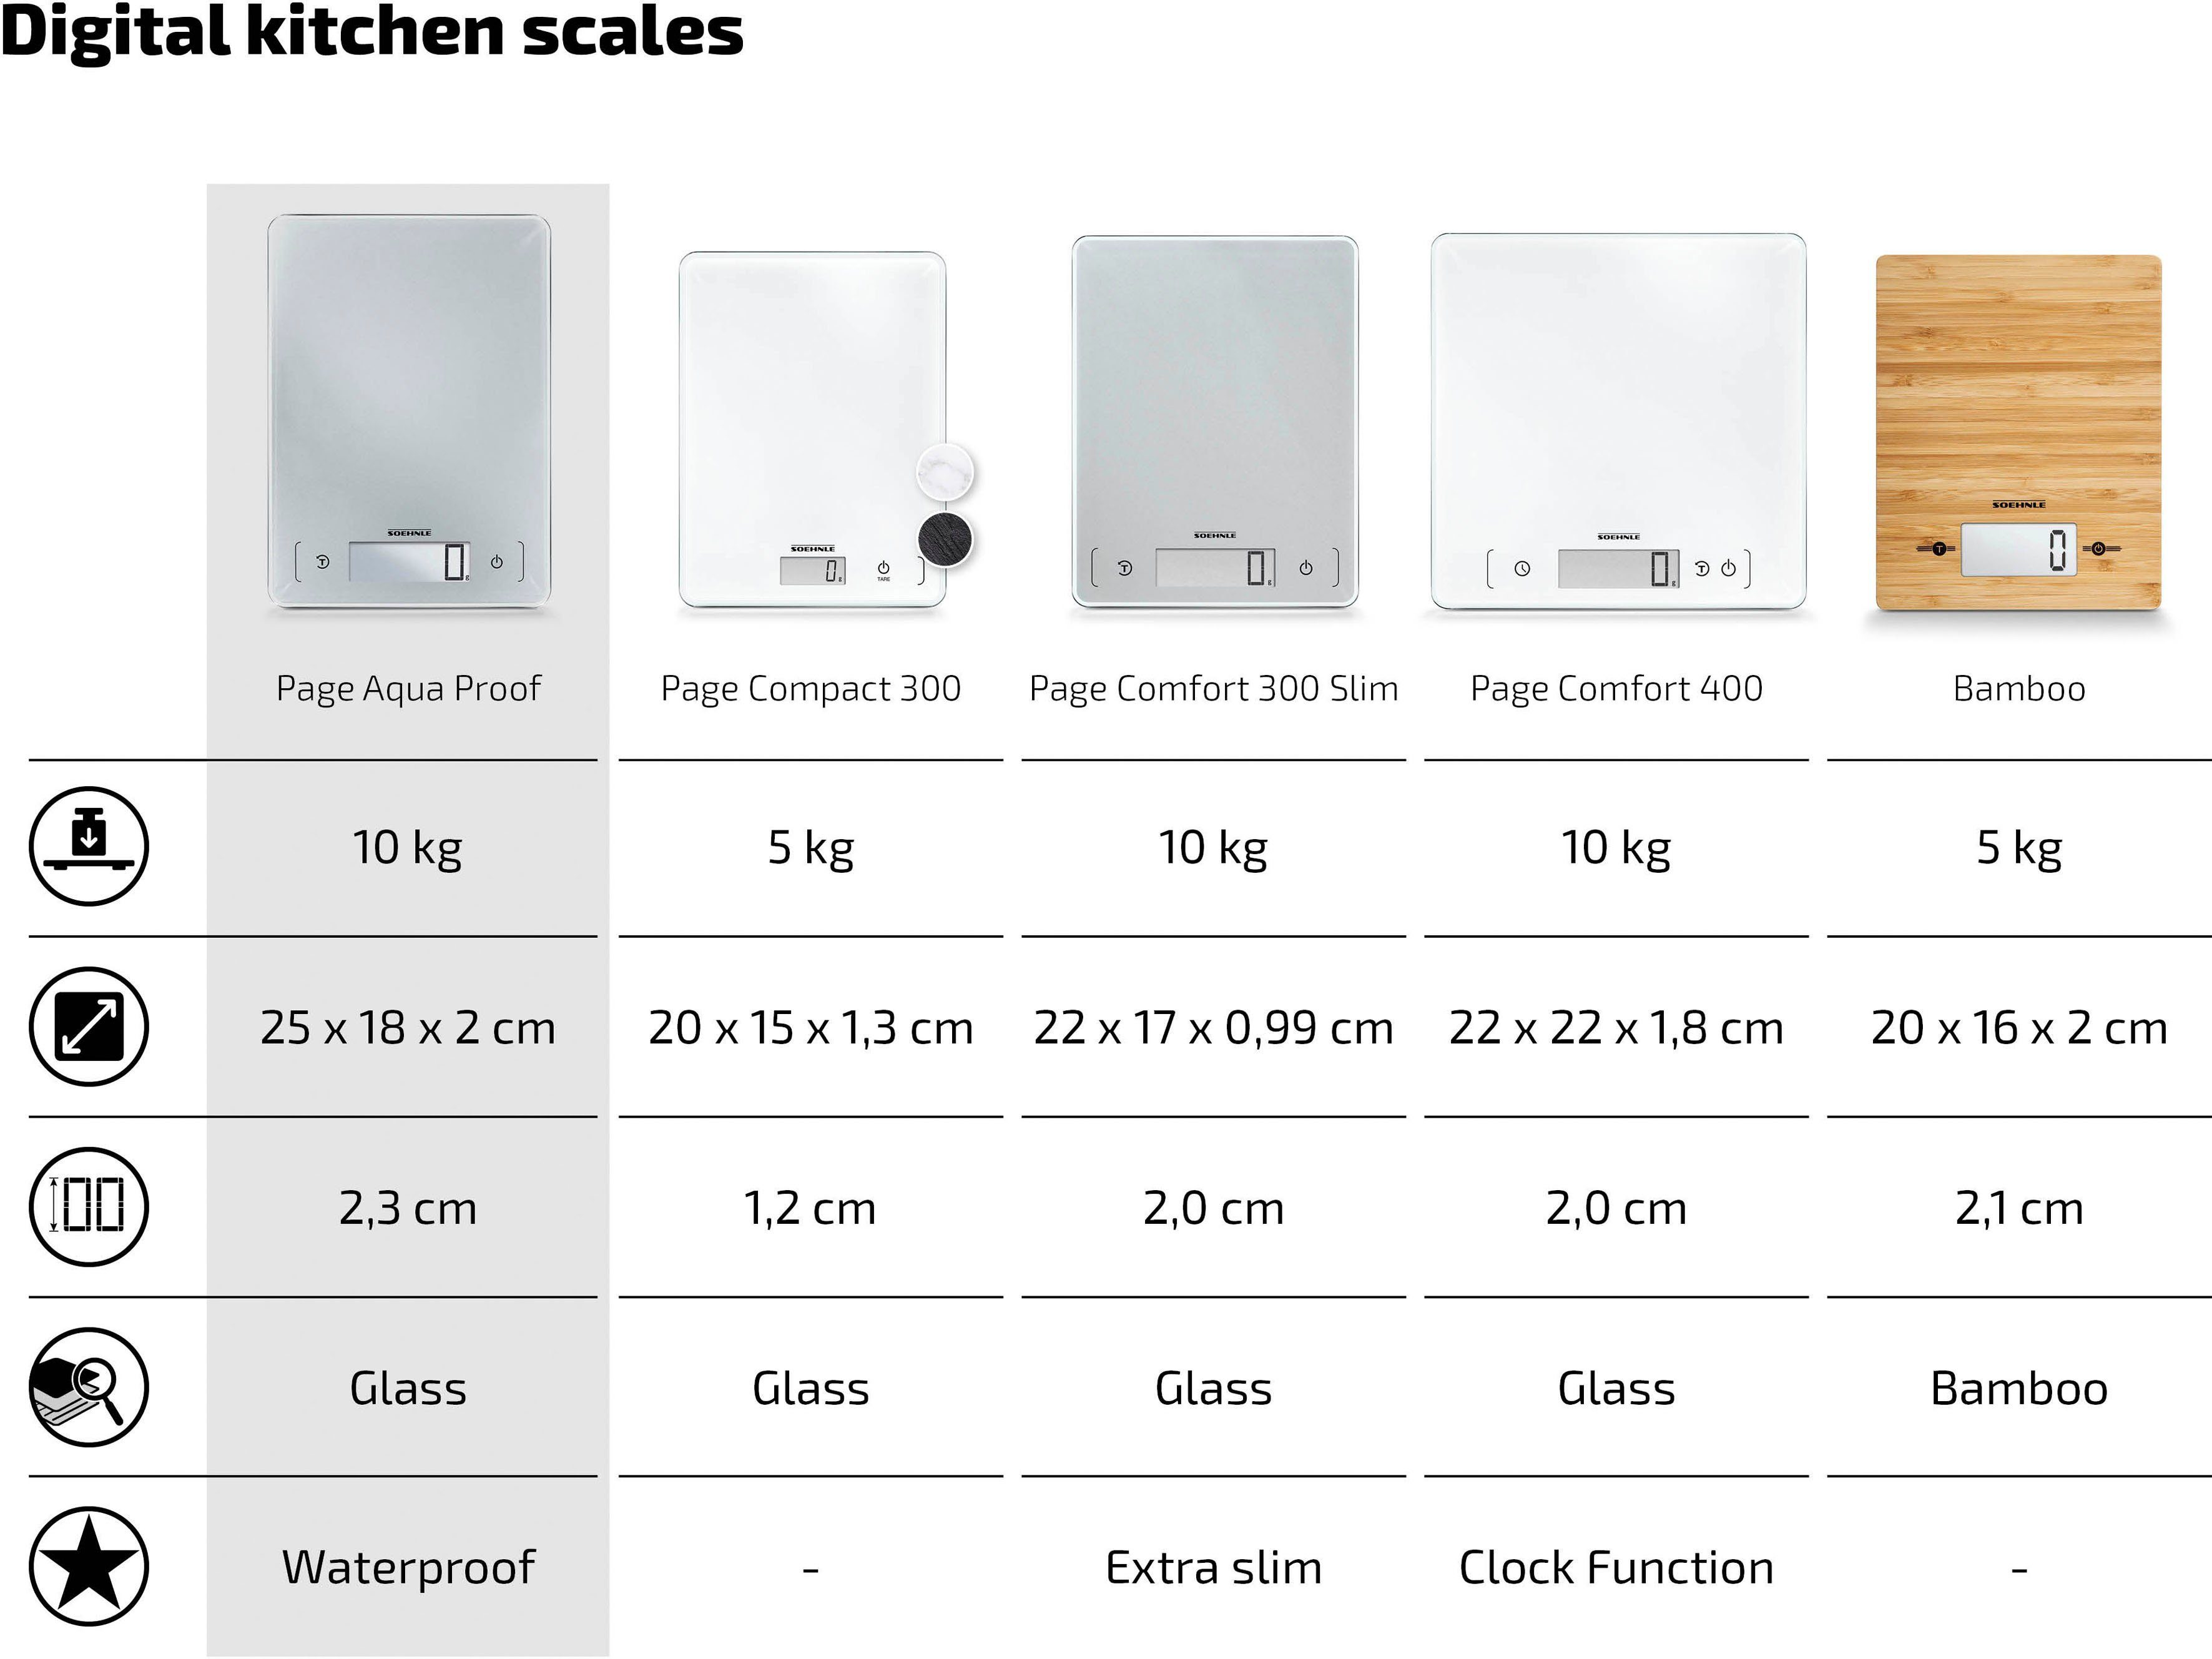 Soehnle wasserdichtes Küchenwaage Aqua Proof, Page Gehäuse